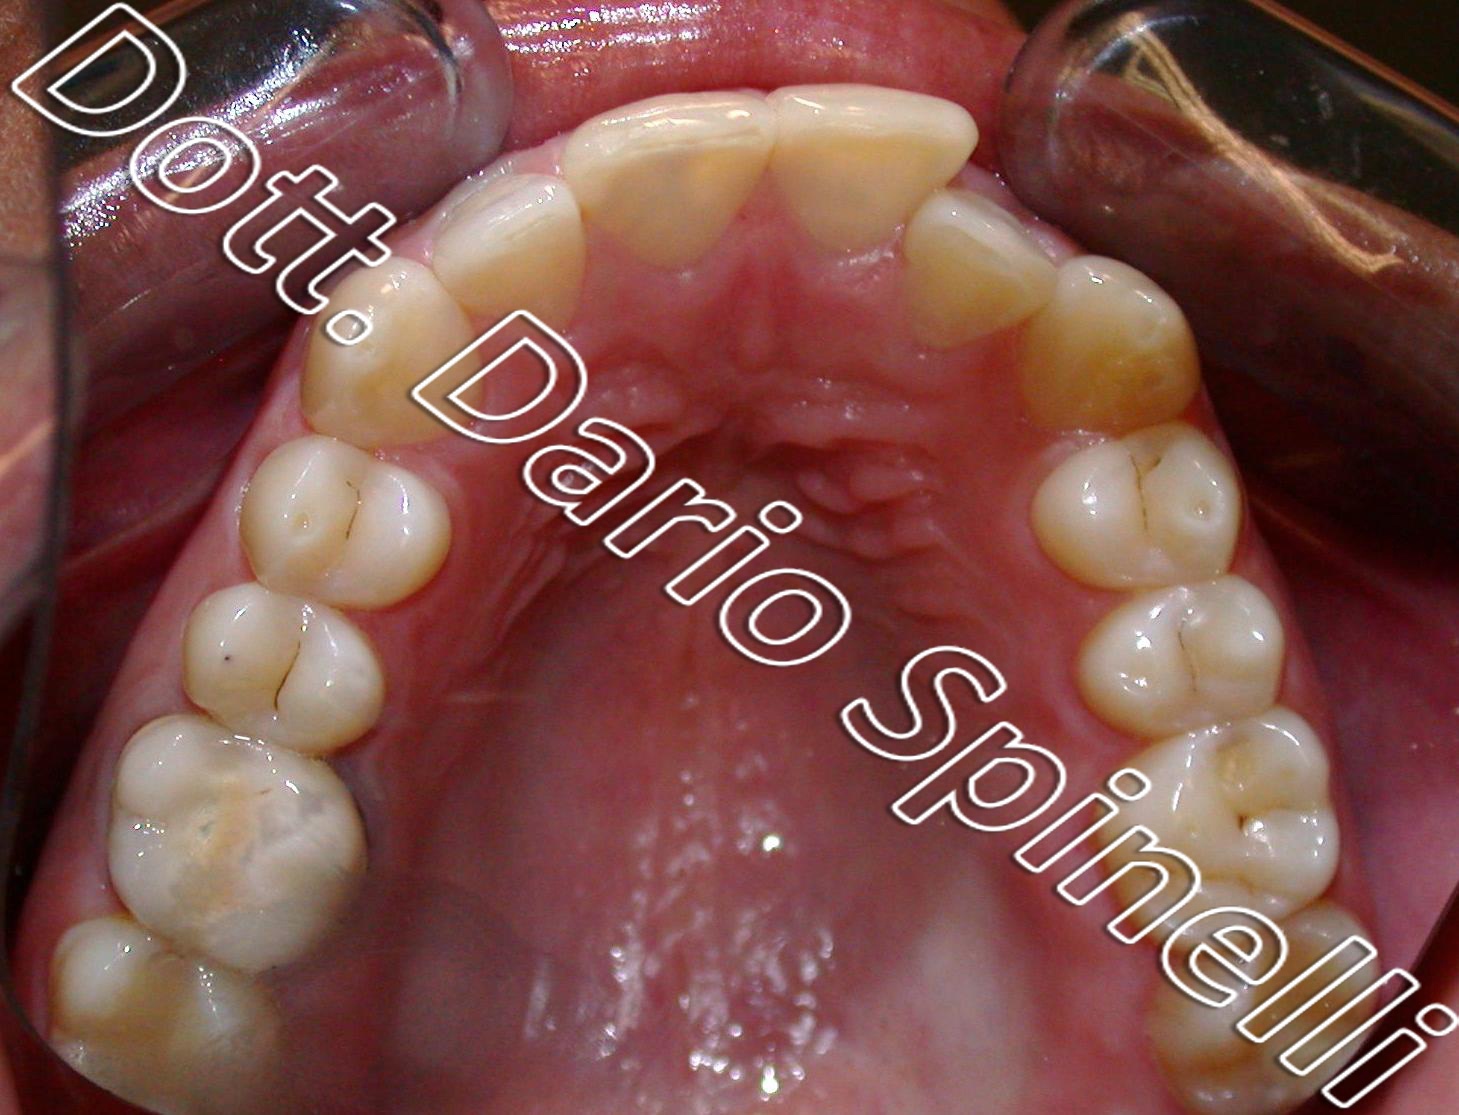 Apparecchio Invisalign o ortodontico: qual è meglio per il tuo sorriso? -  Studio Bellemo - Dentista Pisa